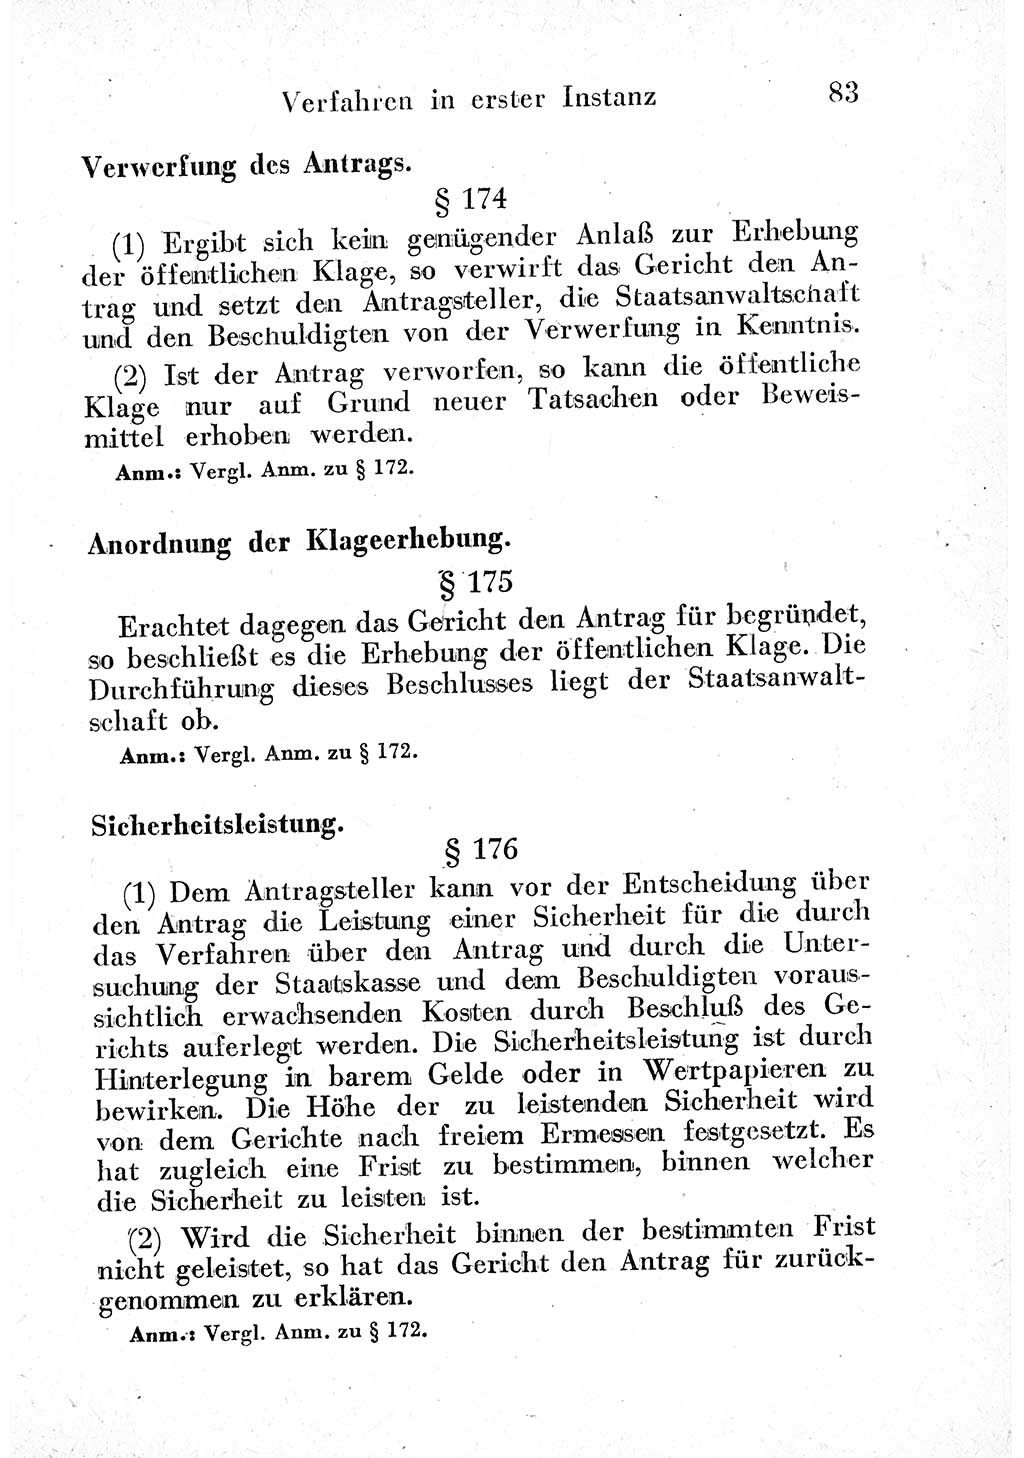 Strafprozeßordnung (StPO), Gerichtsverfassungsgesetz (GVG) und zahlreiche Nebengesetze der sowjetischen Besatzungszone (SBZ) in Deutschland 1949, Seite 83 (StPO GVG Ges. SBZ Dtl. 1949, S. 83)